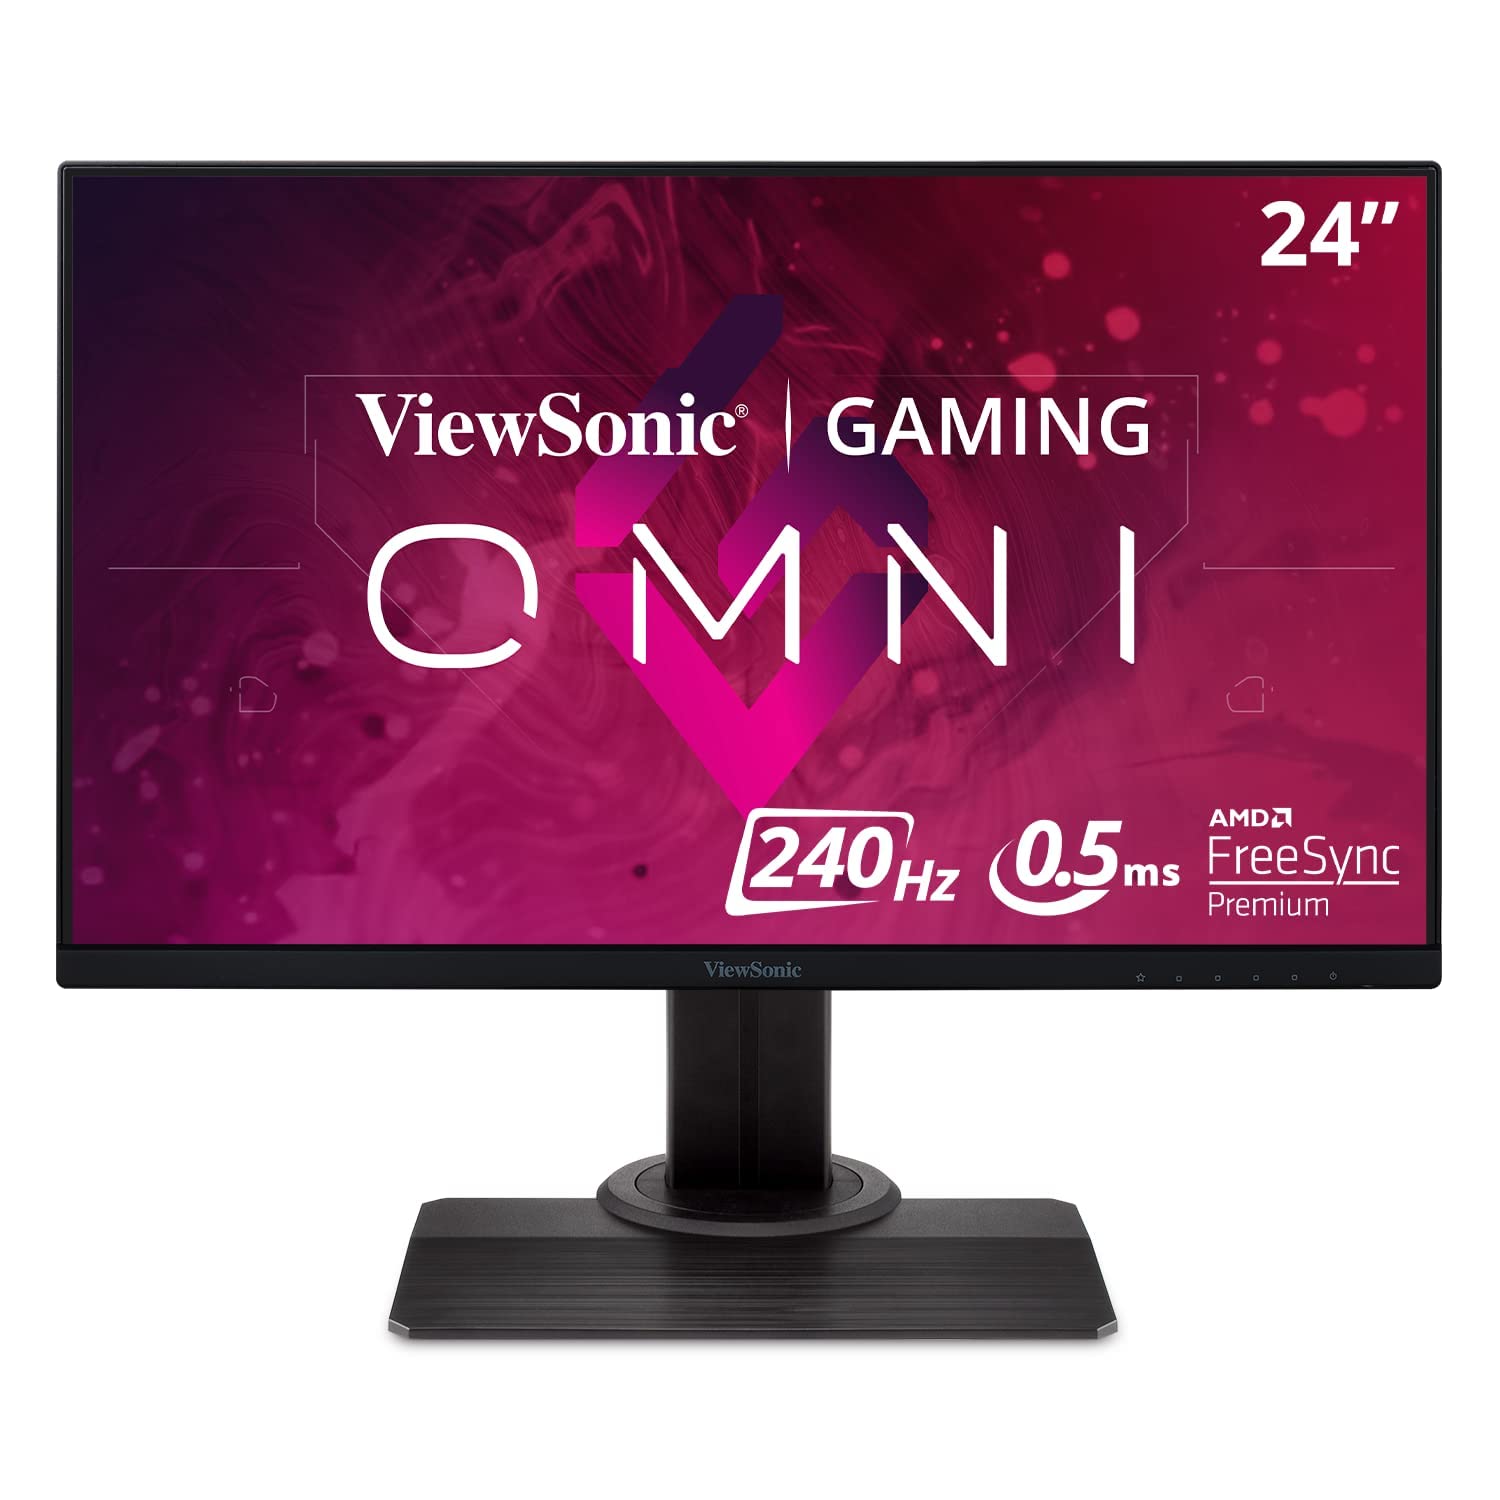  Viewsonic OMNI XG2431 24 インチ 1080p 0.5ms 240Hz ゲーミング モニター、AMD FreeSync プレミアム、高度な人間工学、アイケア、HDMI および E スポーツ向け DisplayPort...